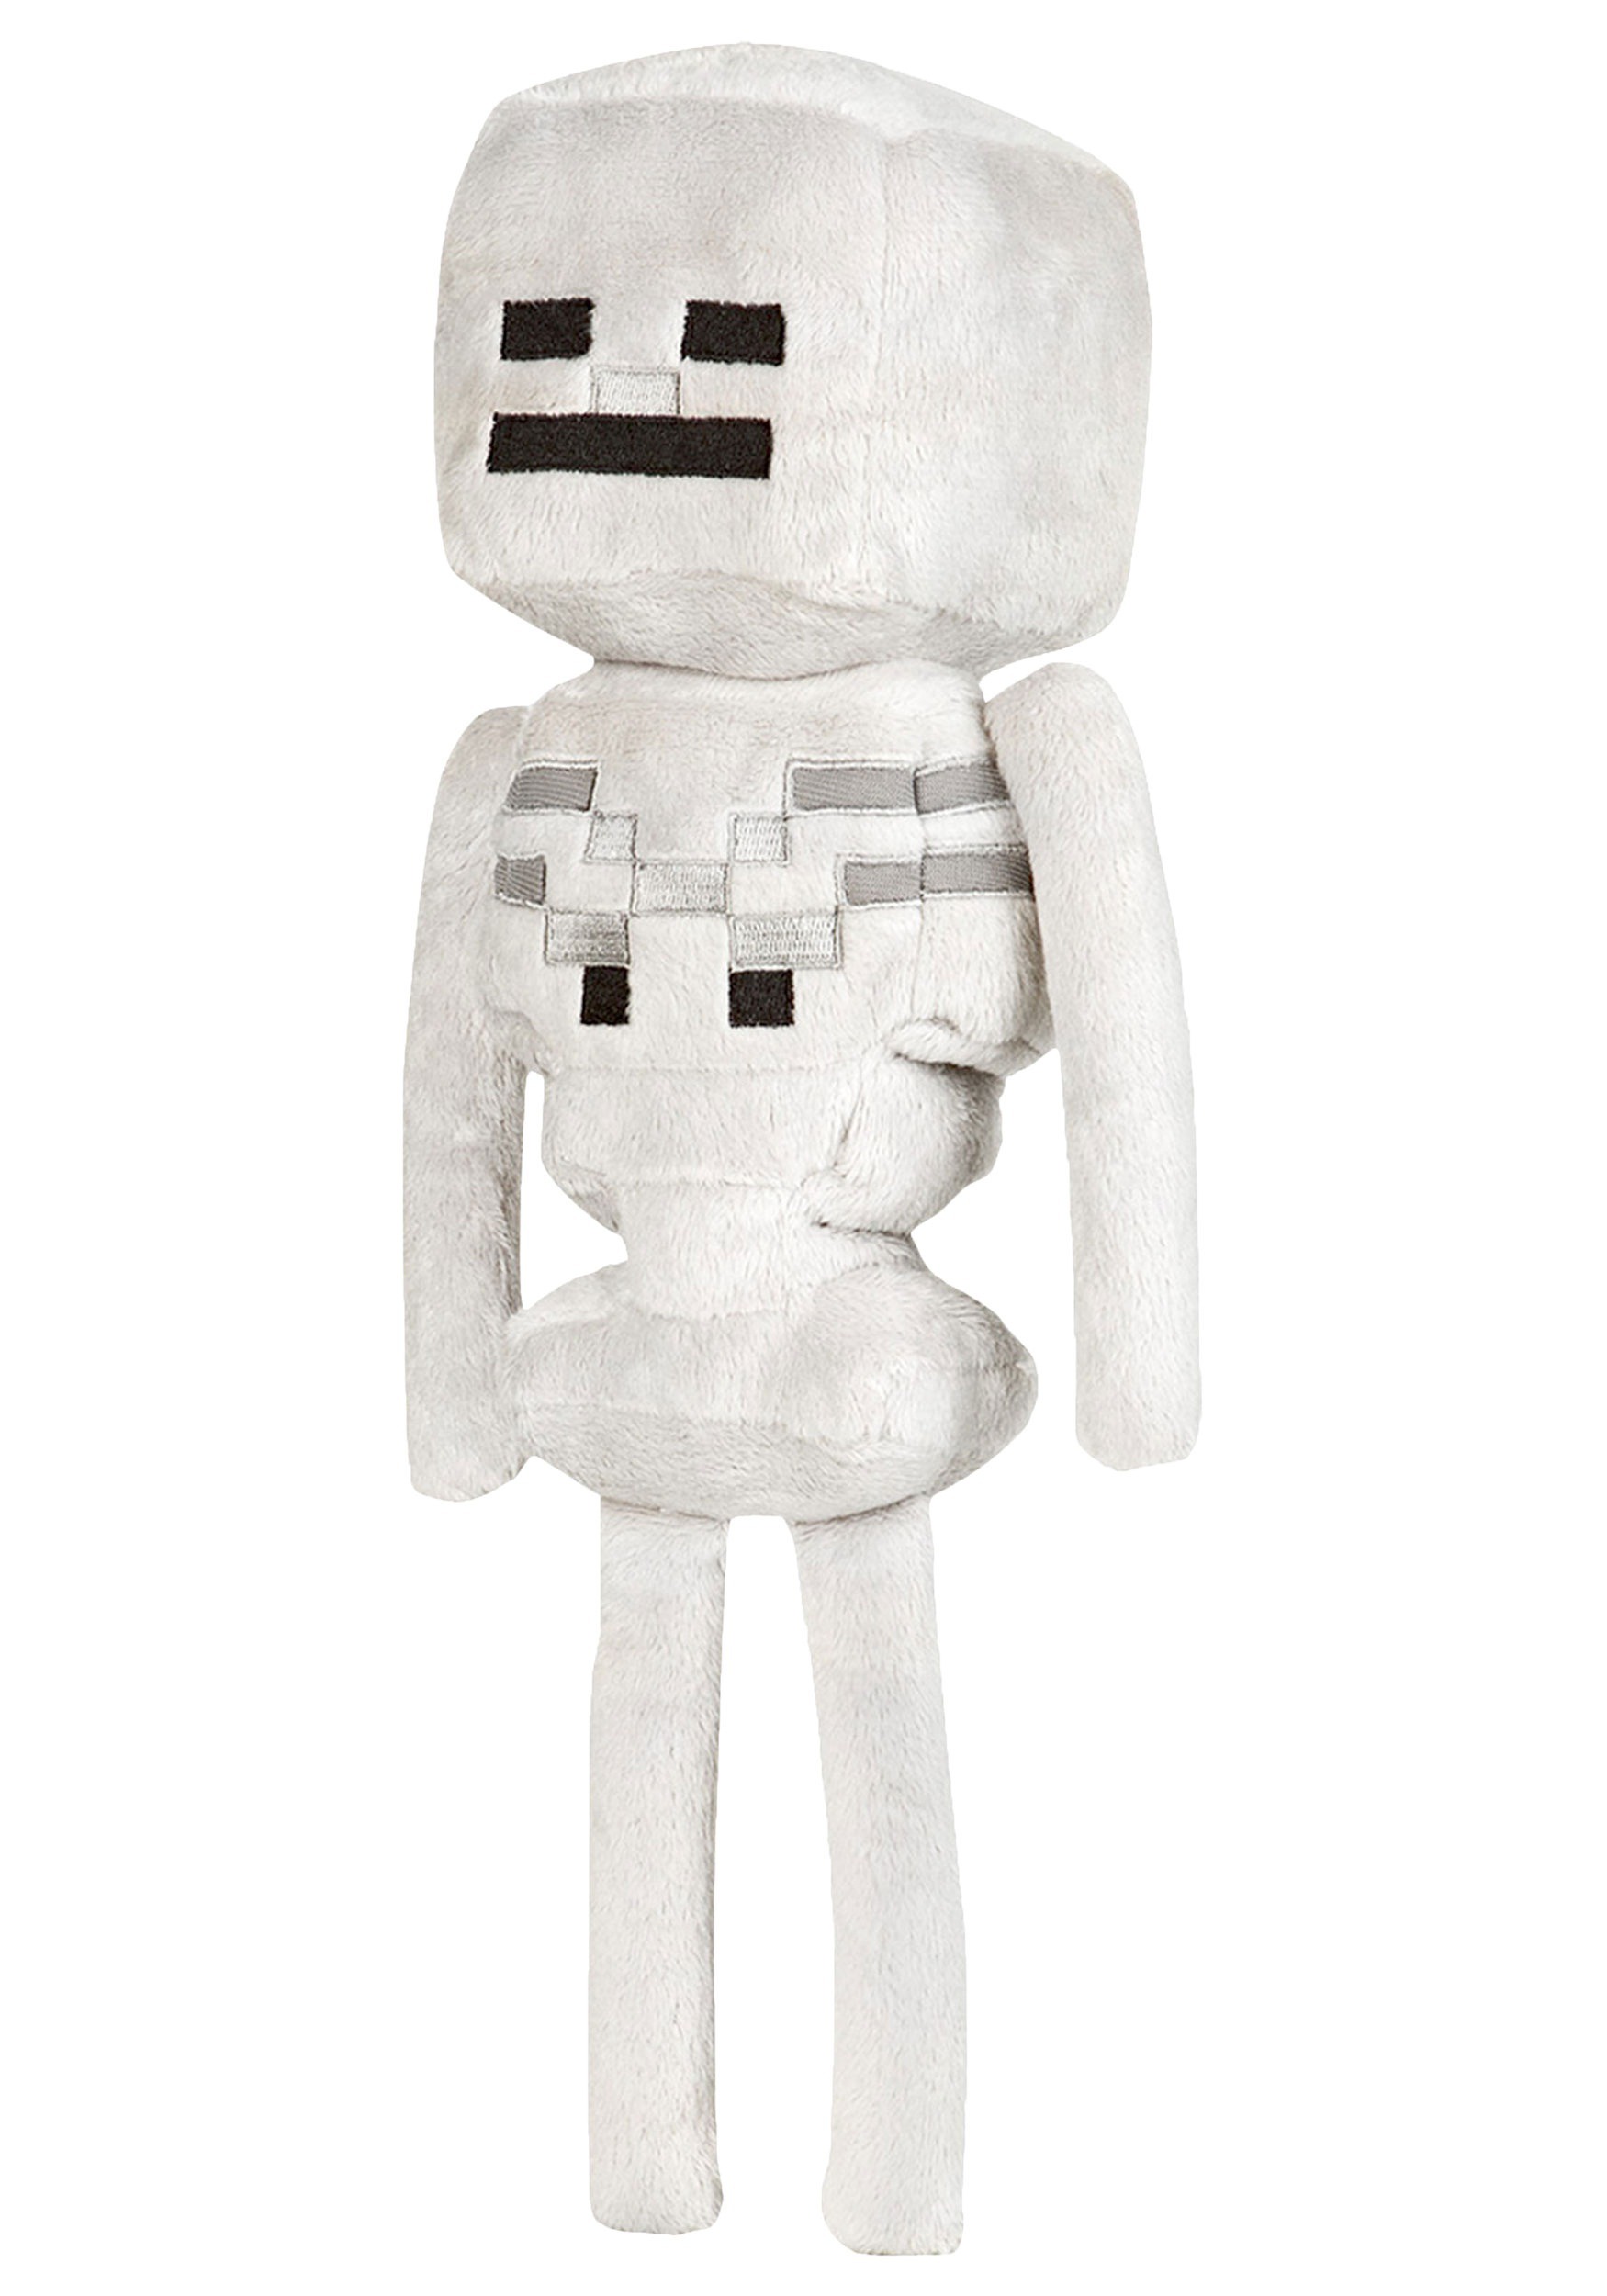 Minecraft Skeleton Figure